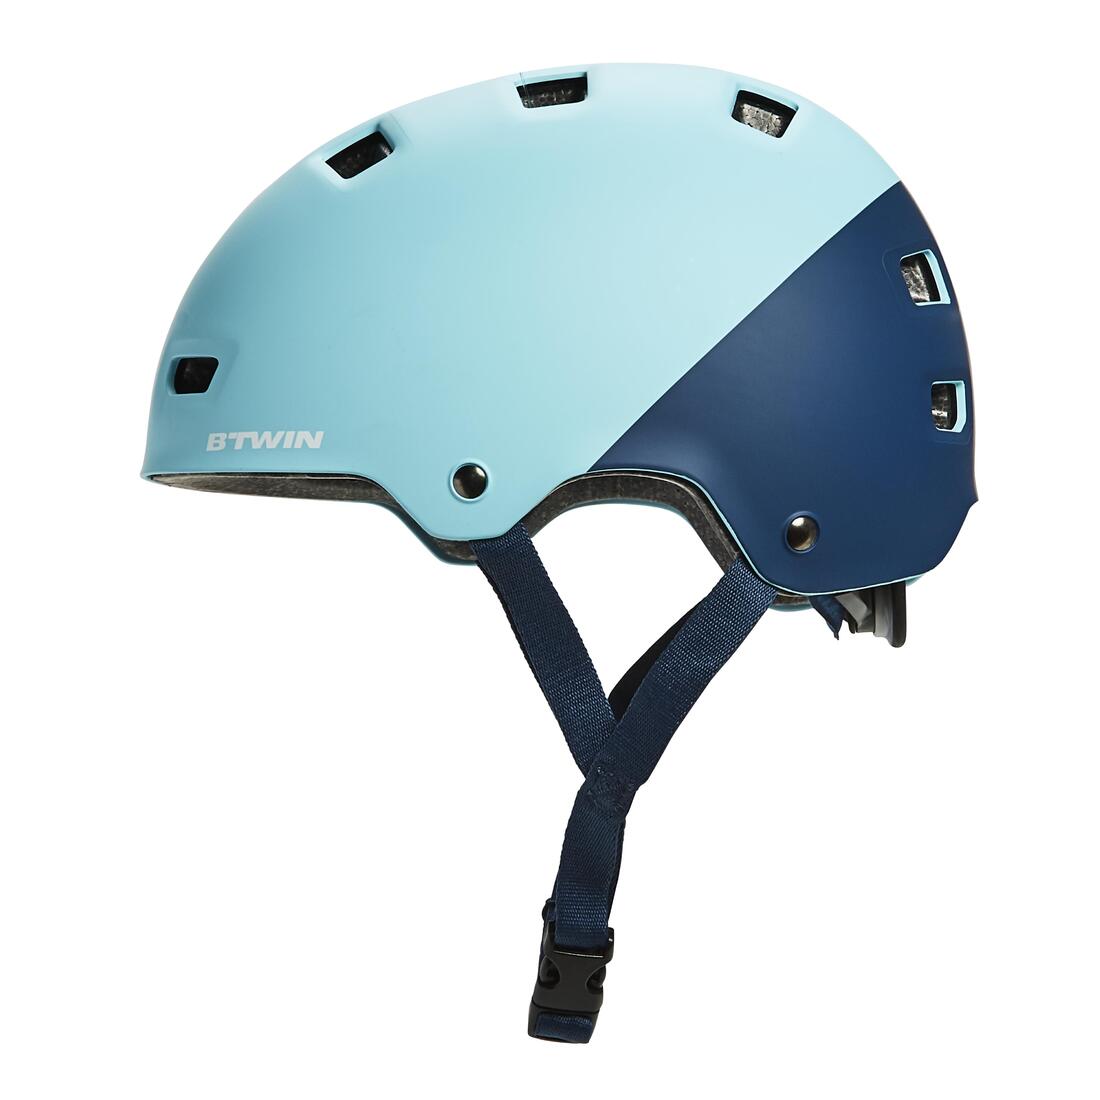 BTWIN (ビトウィン) サイクリング ティーン向けヘルメット520